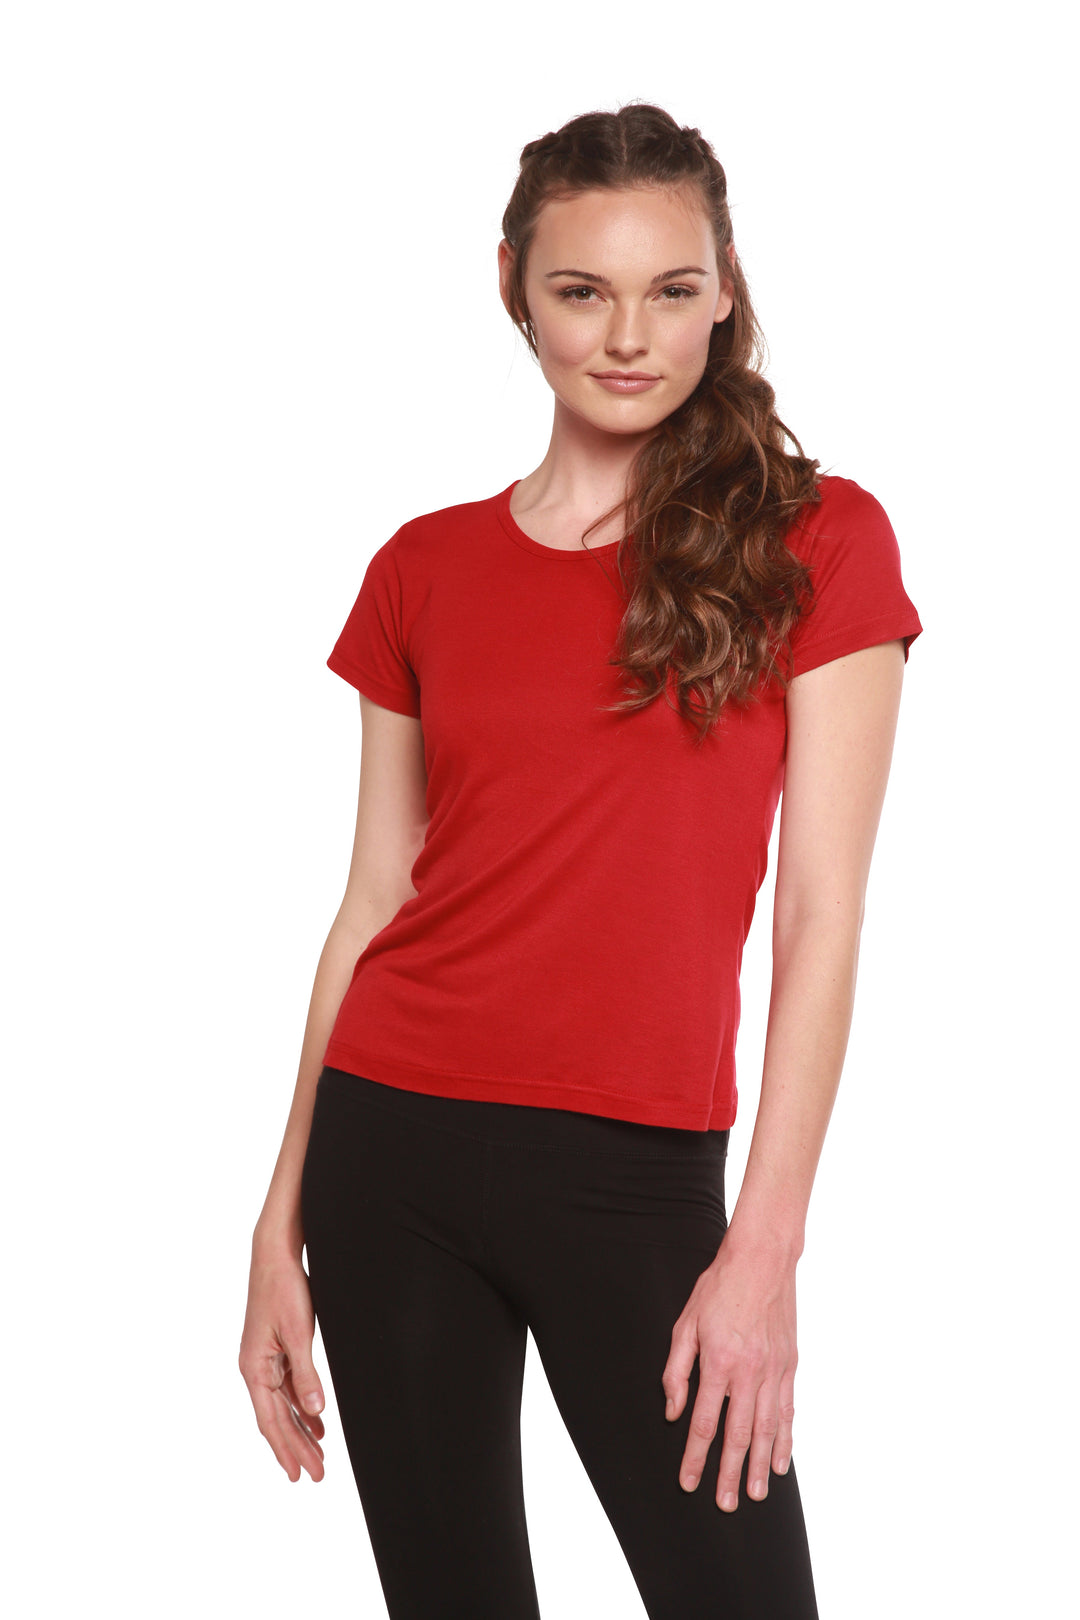 Women's 100% Silk T-Shirt with Bra Short Sleeves Tee Shirt Top Built in Bra